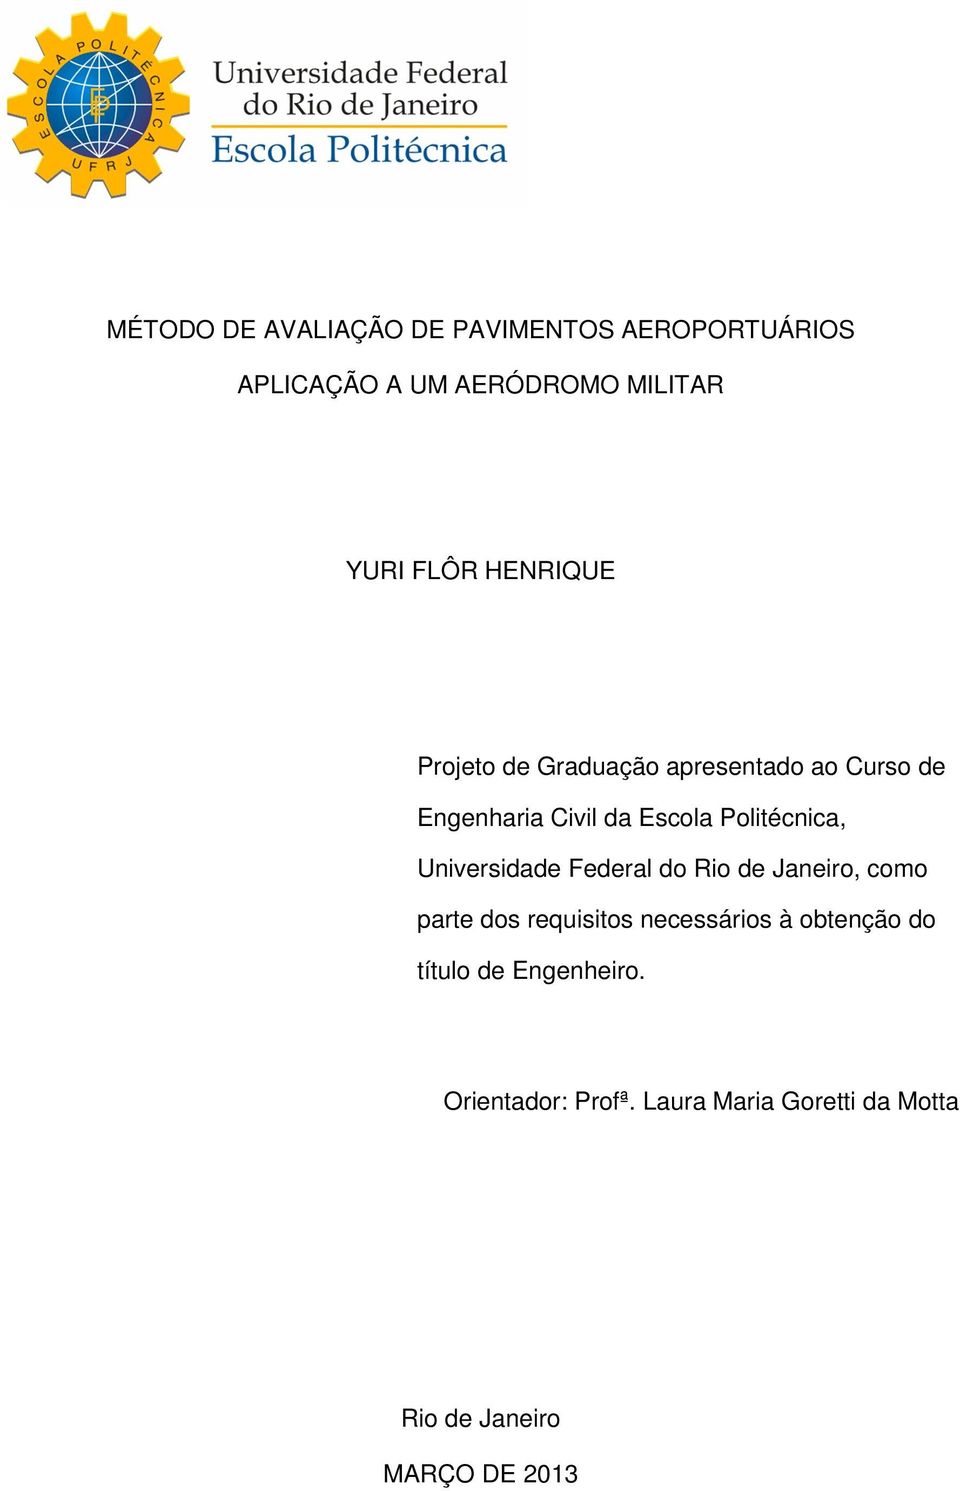 Universidade Federal do Rio de Janeiro, como parte dos requisitos necessários à obtenção do